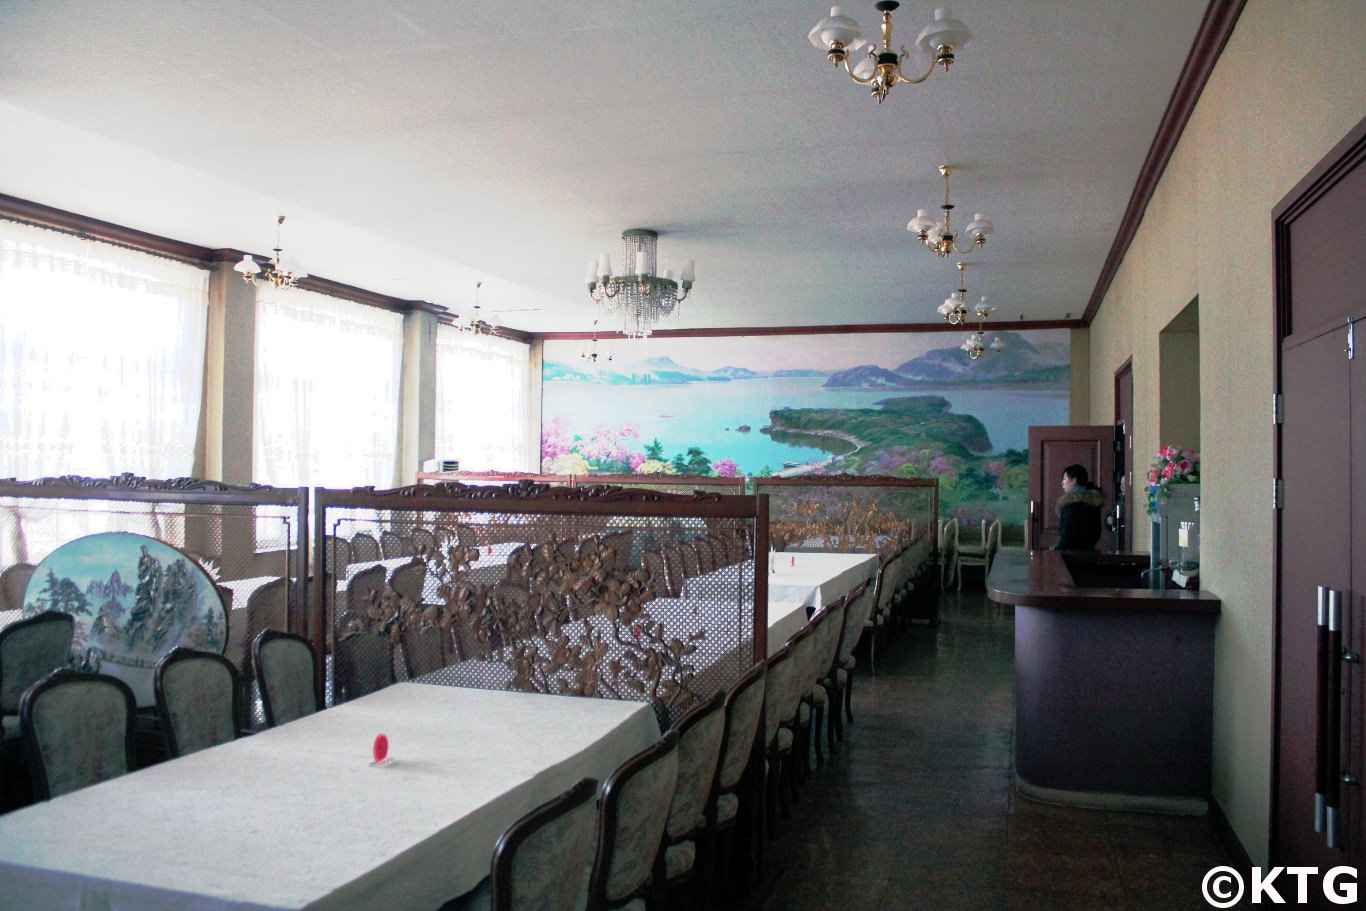 Peinture murale dans la salle de banquet le 8 mars à Sariwon, Corée du Nord, RPDC. Photographie prise par KTG Tours. C'est un hôtel de troisième classe. Sariwon est la capitale provinciale de la province du Nord Hwanghae